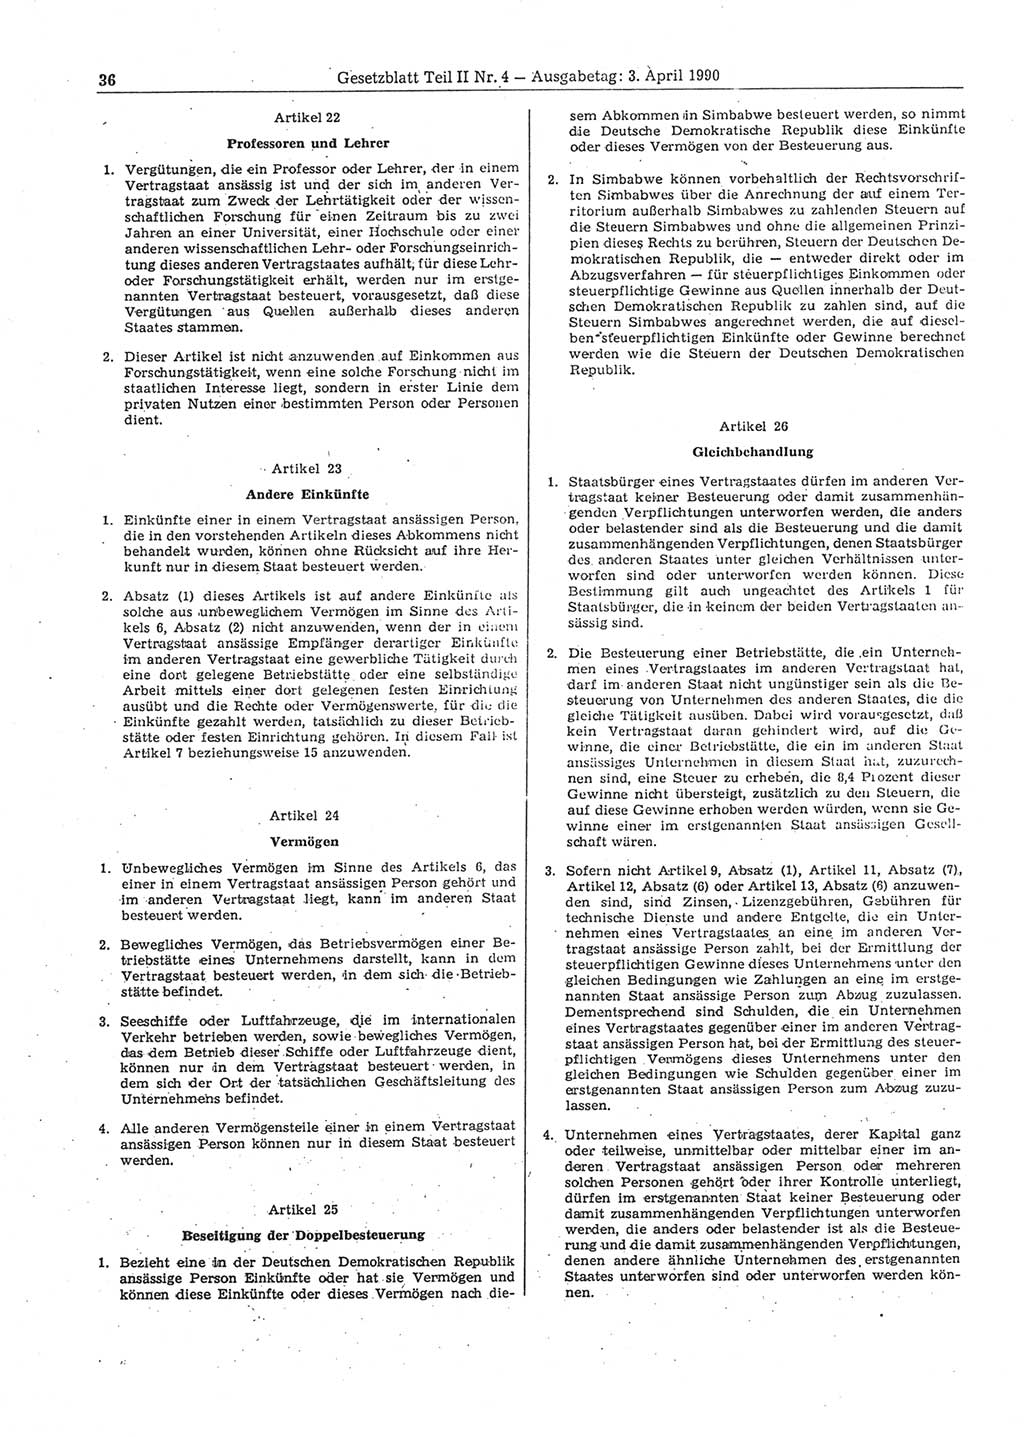 Gesetzblatt (GBl.) der Deutschen Demokratischen Republik (DDR) Teil ⅠⅠ 1990, Seite 36 (GBl. DDR ⅠⅠ 1990, S. 36)